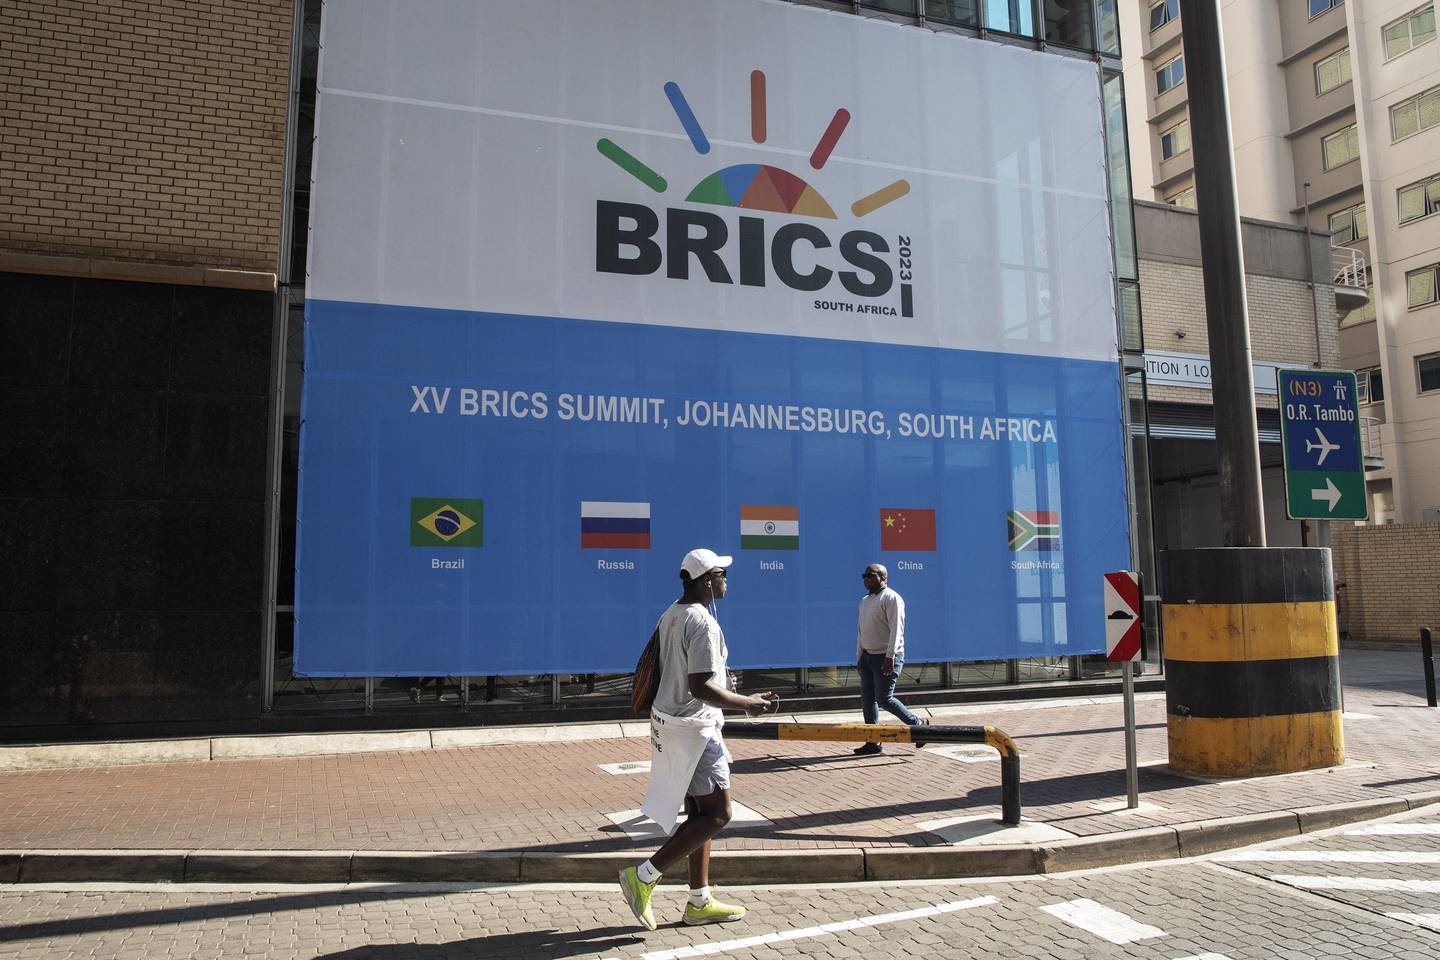 Los países BRICS, un acrónimo de los cinco miembros Brasil, Rusia, India, China y Sudáfrica, reunirse durante tres días para una cumbre en Johannesburgo a partir del 22 de agosto